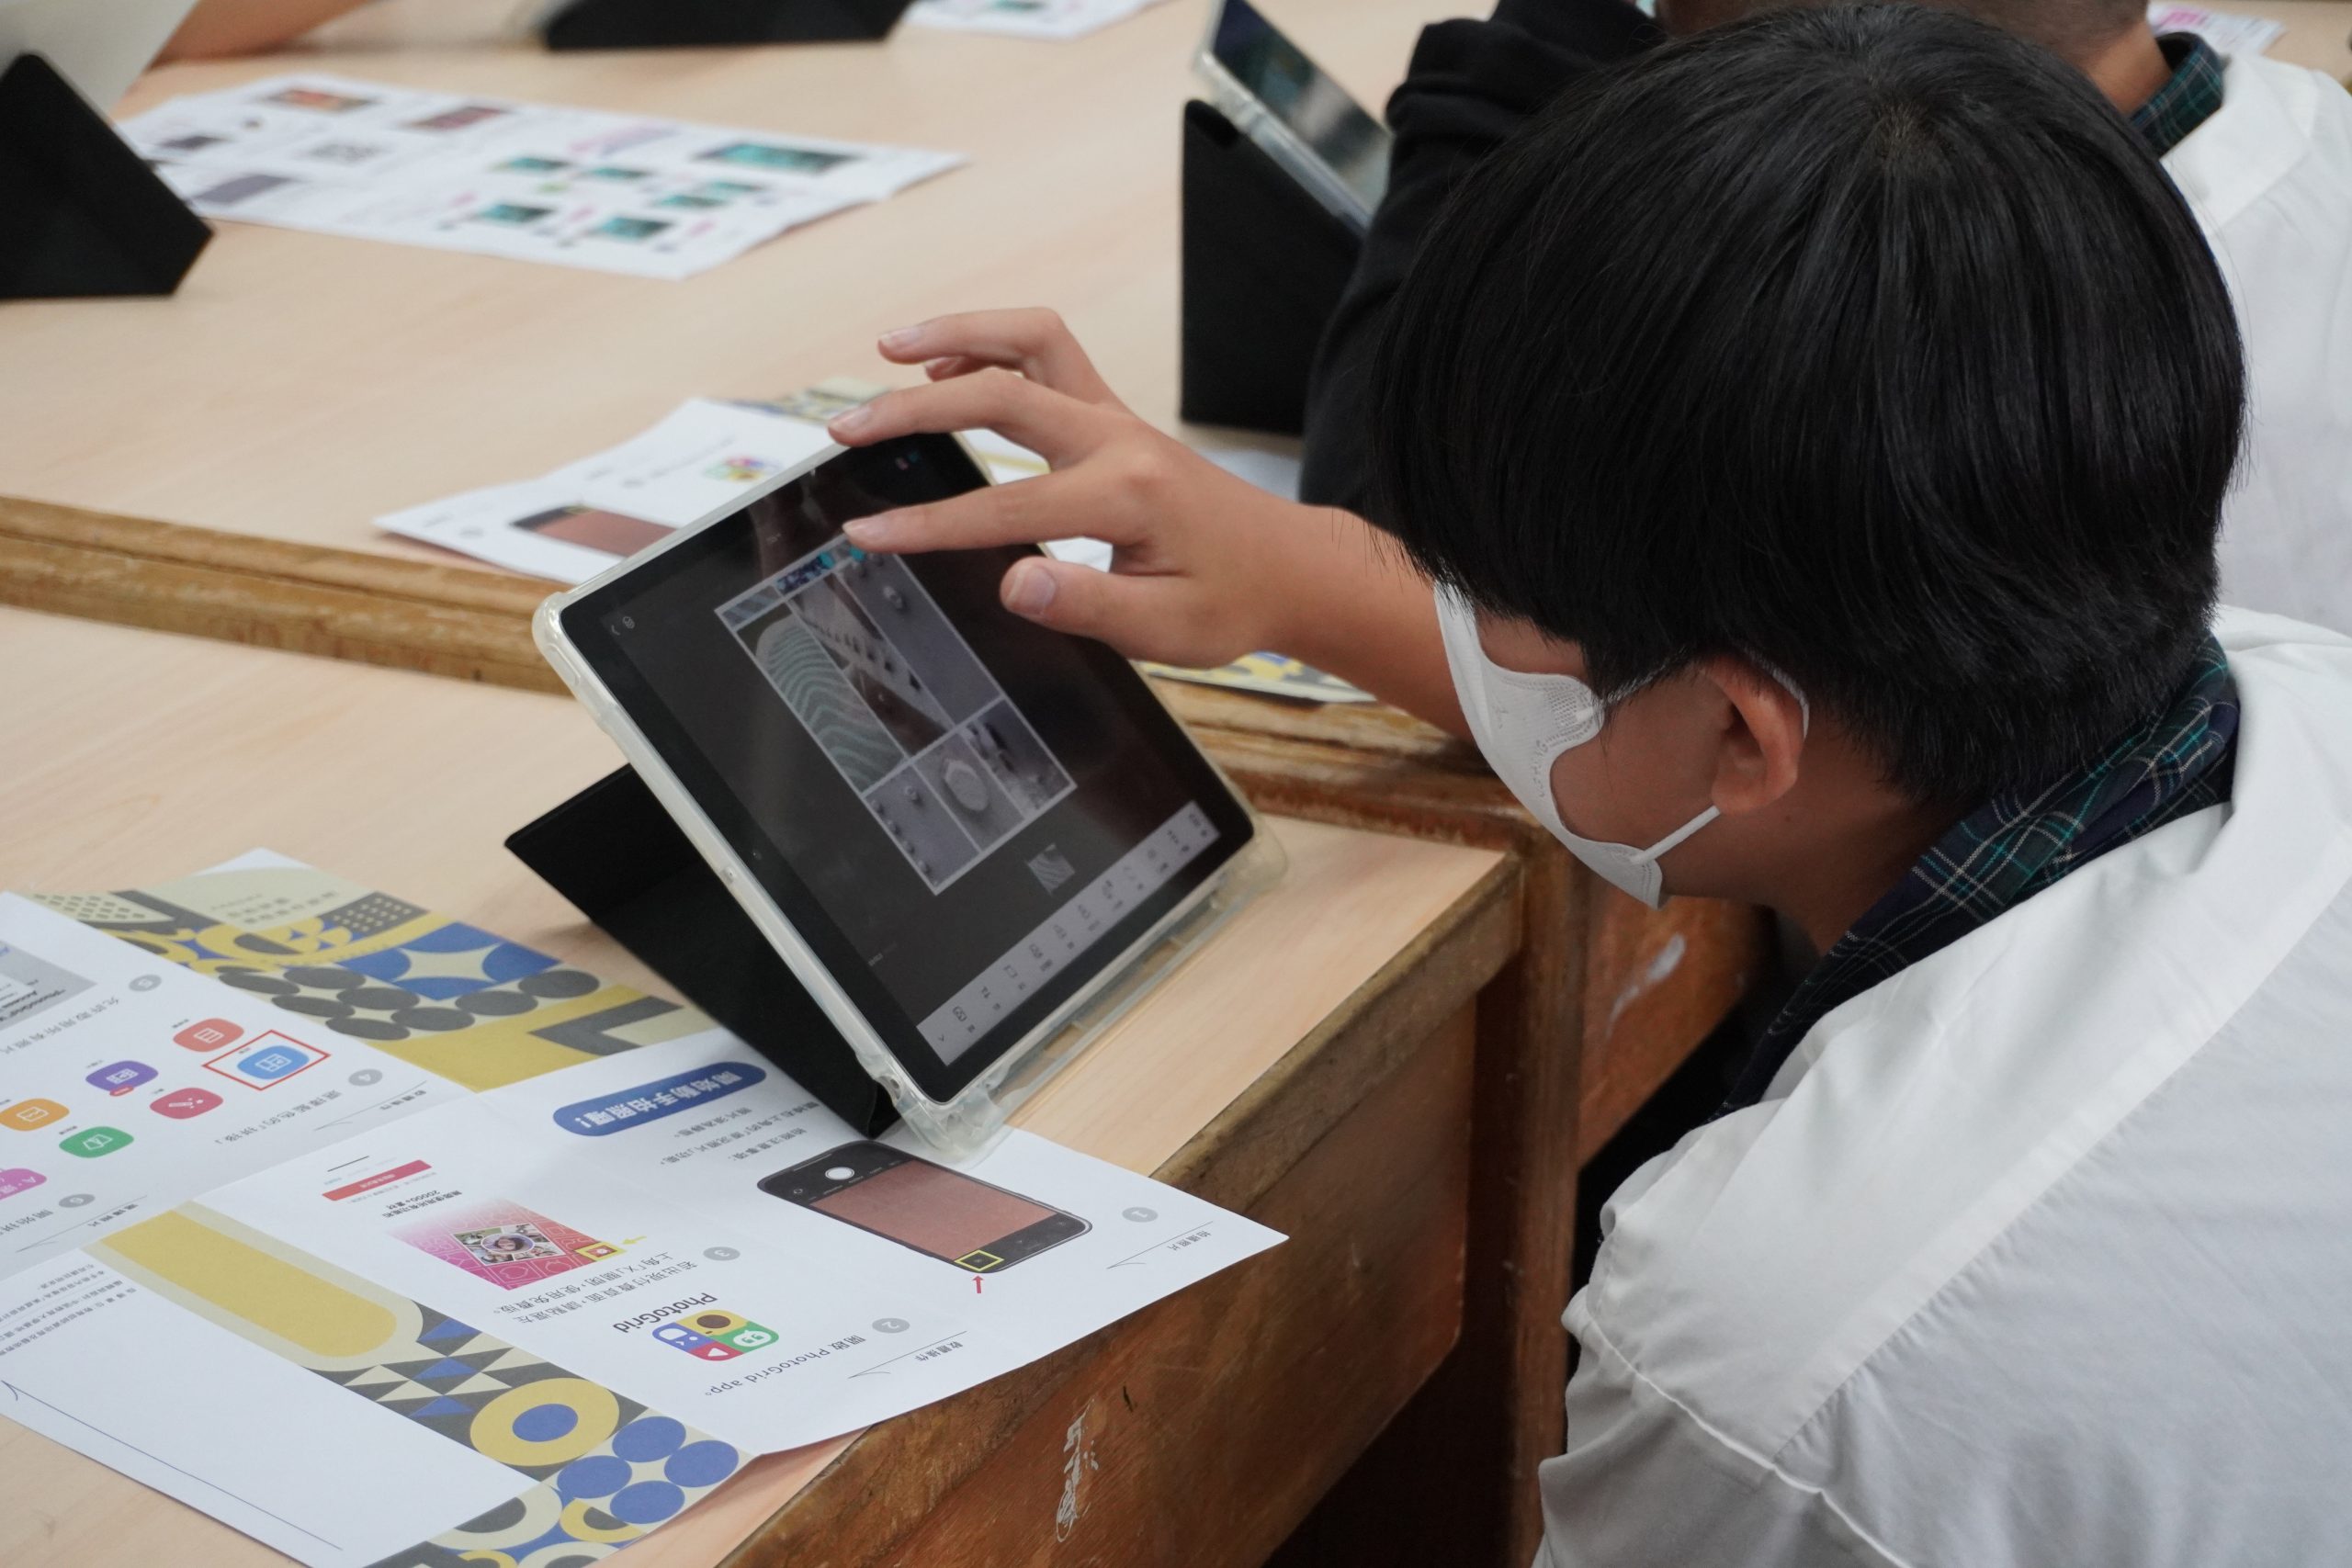 112學年度第一學期於雲林縣立二崙國民中學施辦自拍拼圖課程實作紀錄系列照片共20張